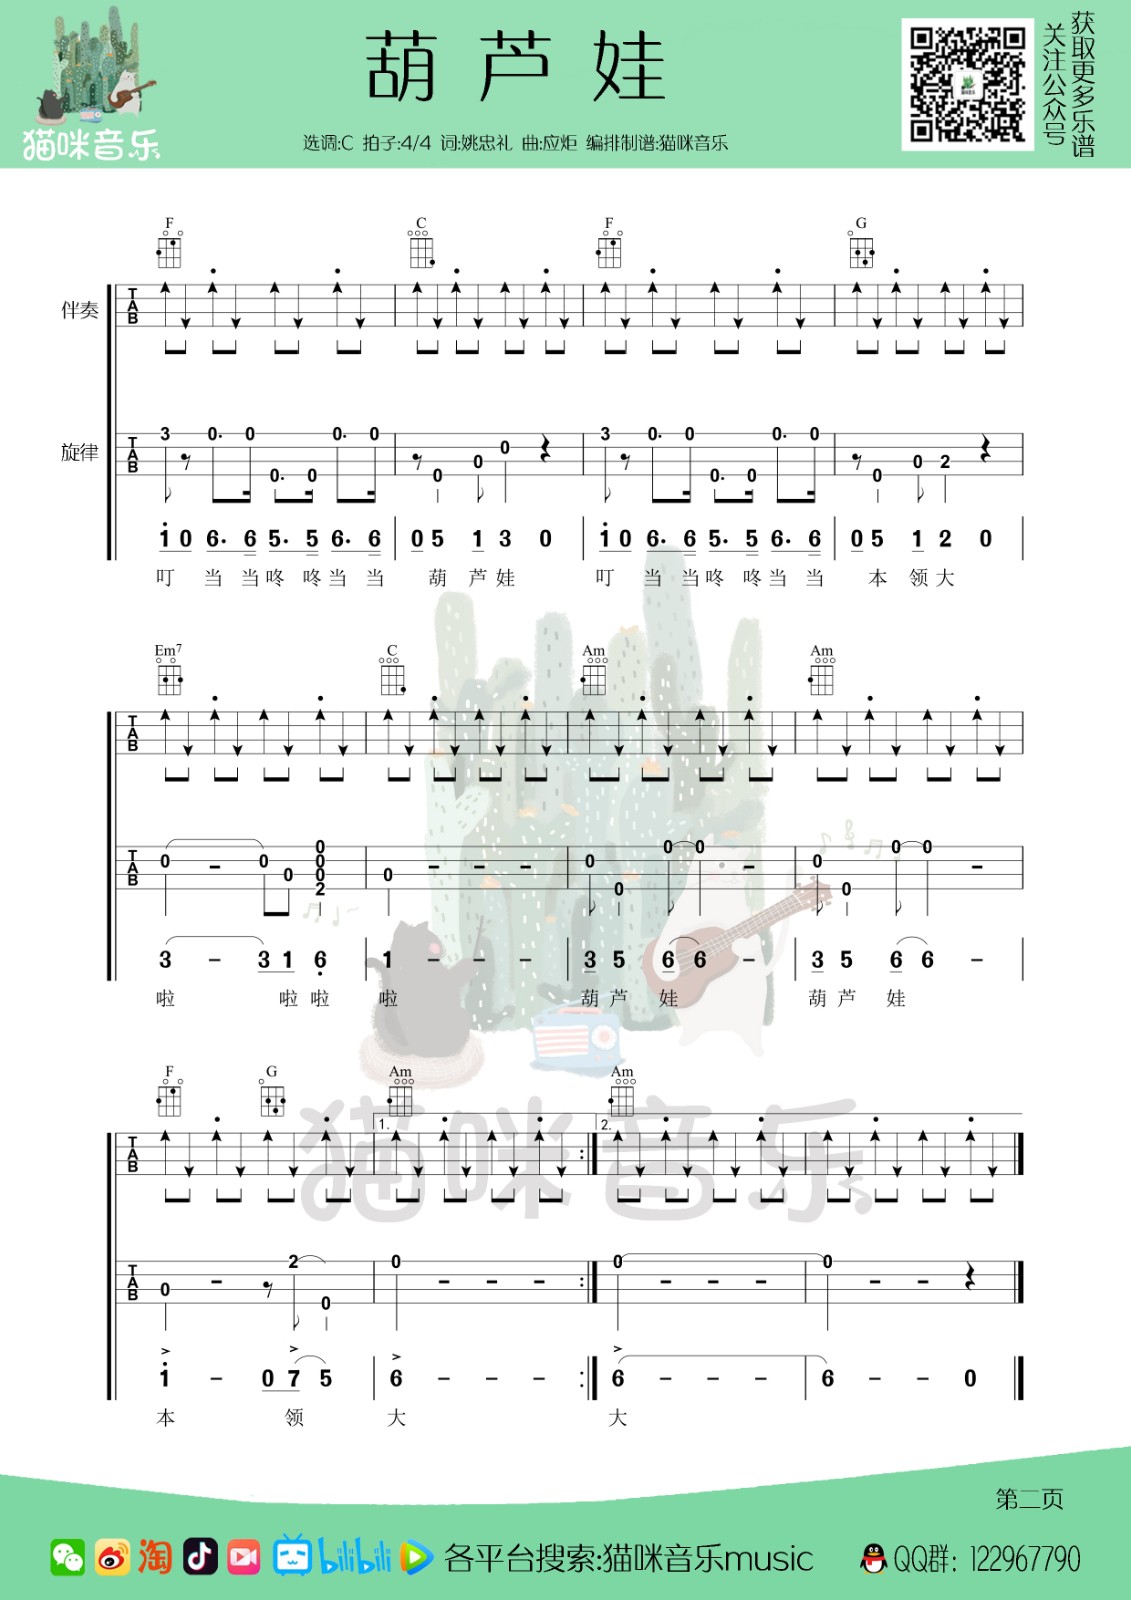 ukulele儿童歌曲谱《葫芦娃》简单版_指弹+弹唱 - 尤克里里学习网